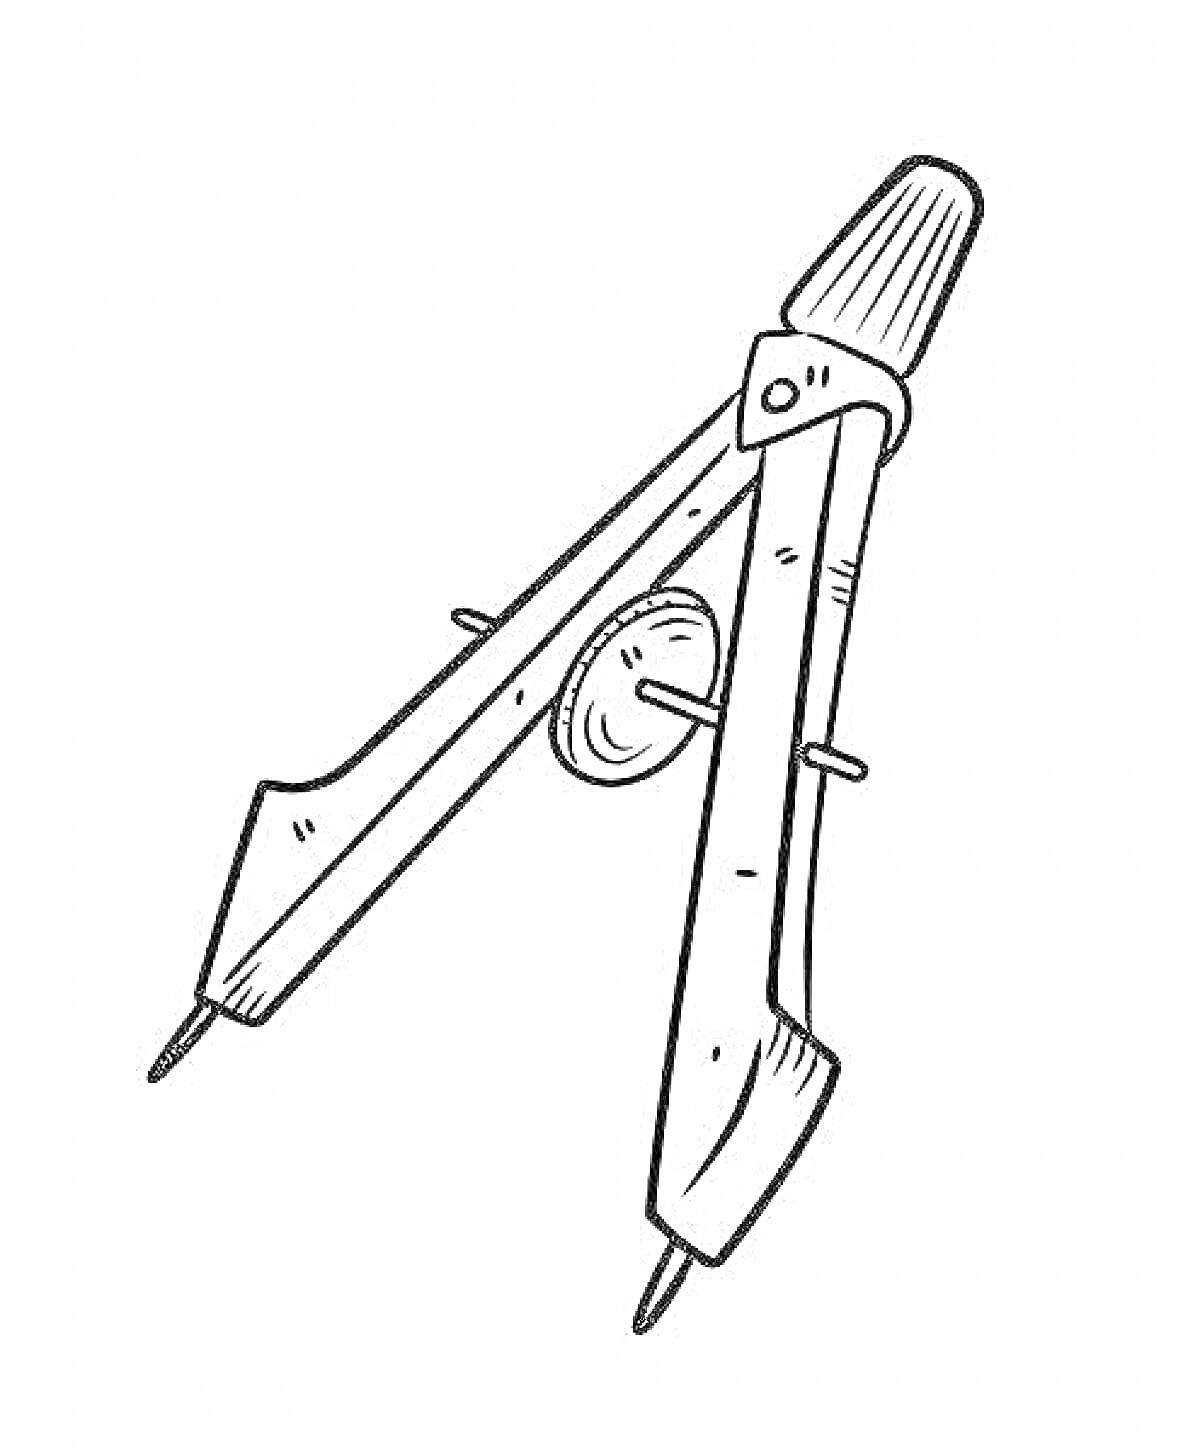 Раскраска Циркуль с разметочным и чертежным наконечниками, изображение с регулировочным колесиком и корпусом